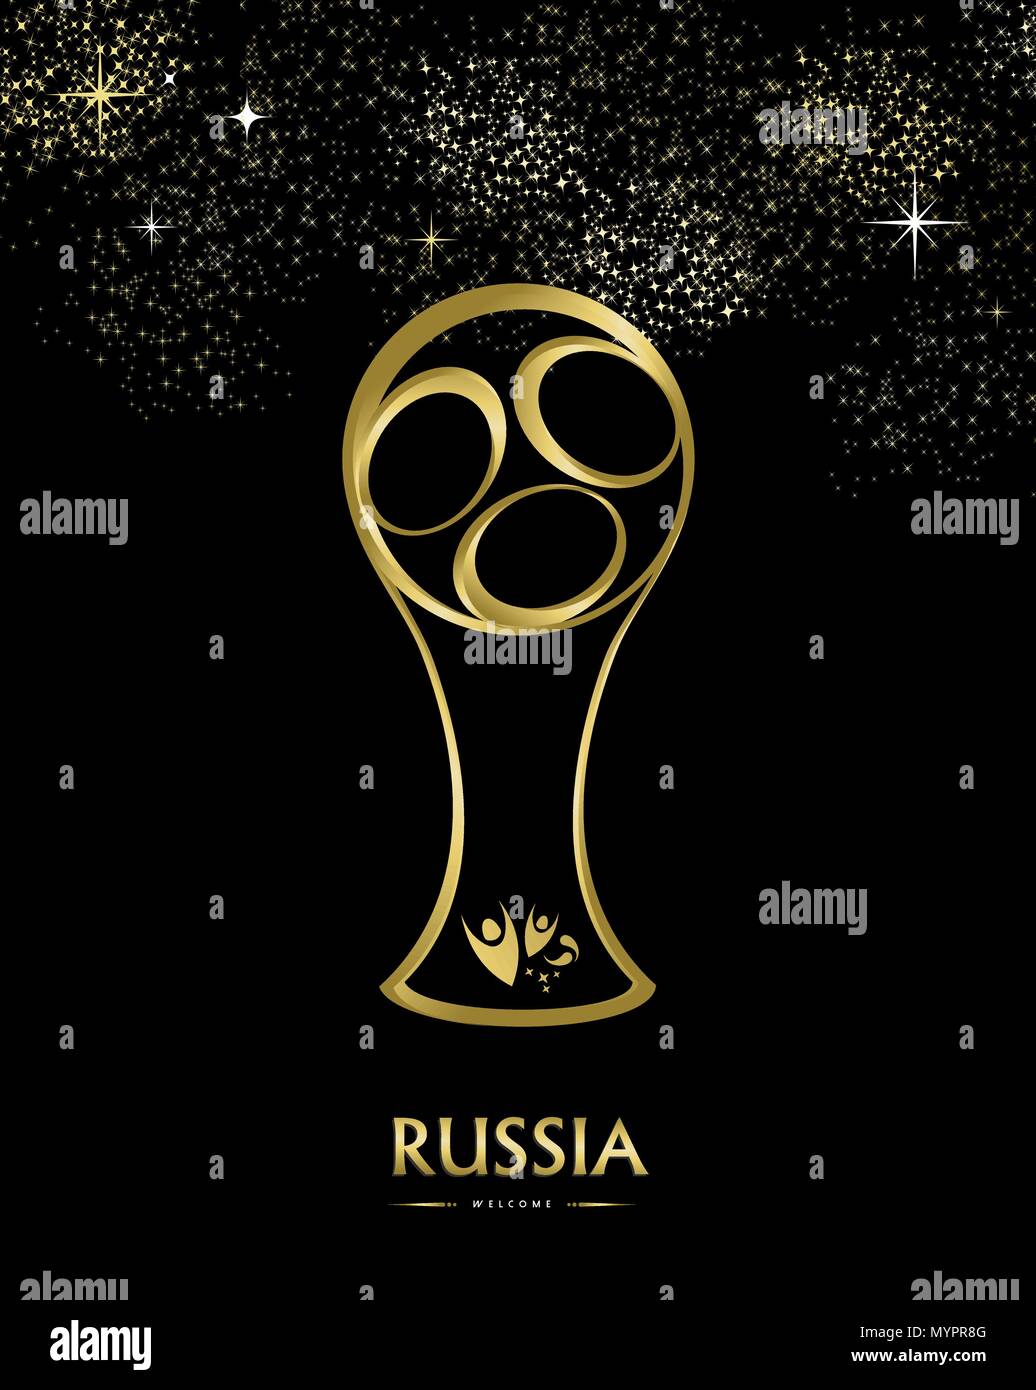 Fußball-Award für besondere Fußballspiel. Russland Text zitieren und gold Abbildung mit Feuerwerk im Hintergrund. EPS 10 Vektor. Stock Vektor